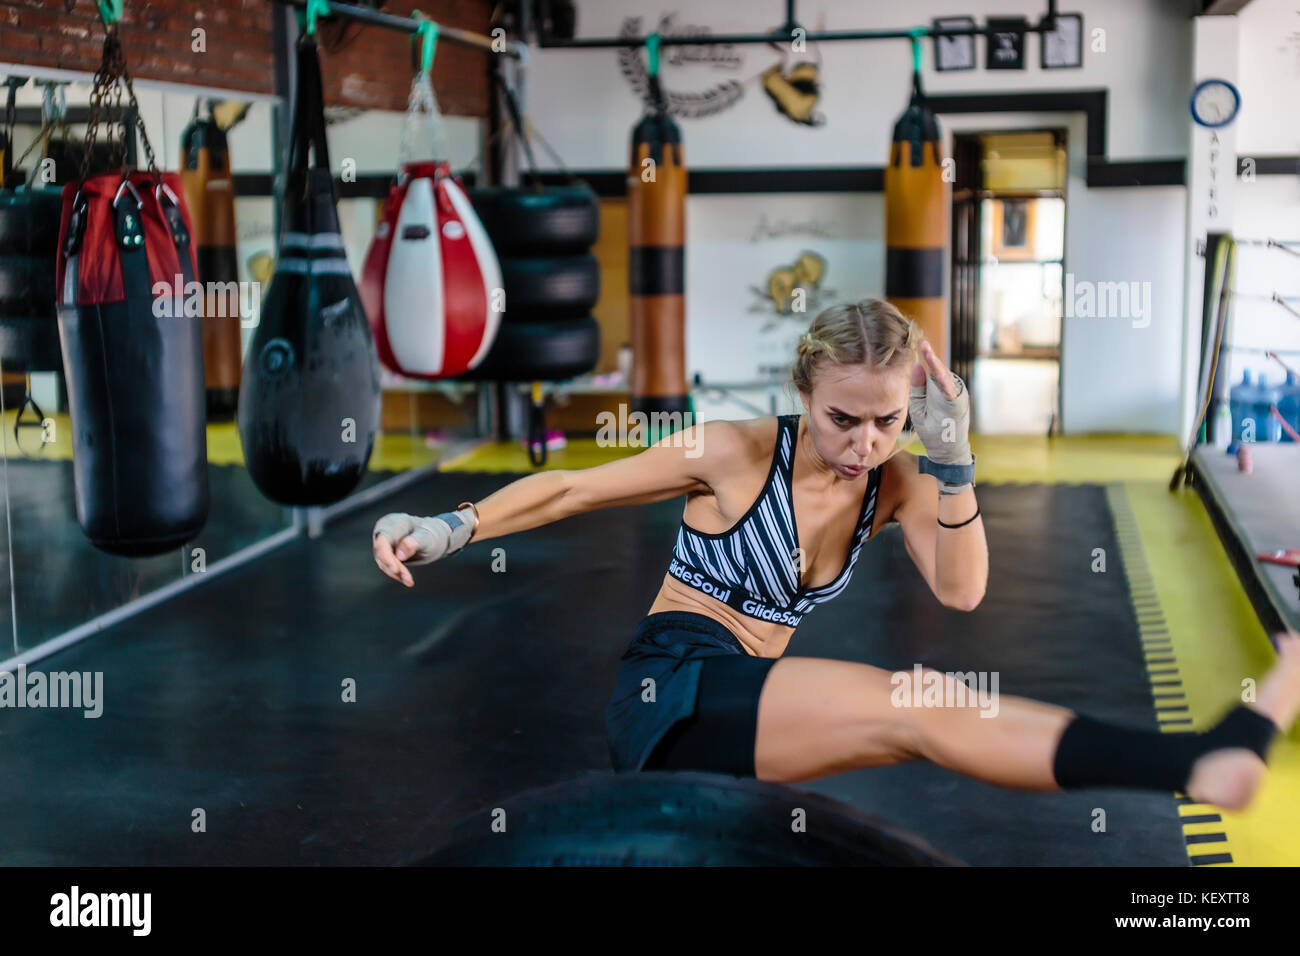 Photographie de jeune femme dans une salle de sport tout en pratiquant des coups de kickboxing, Seminyak, Bali, Indonésie Banque D'Images